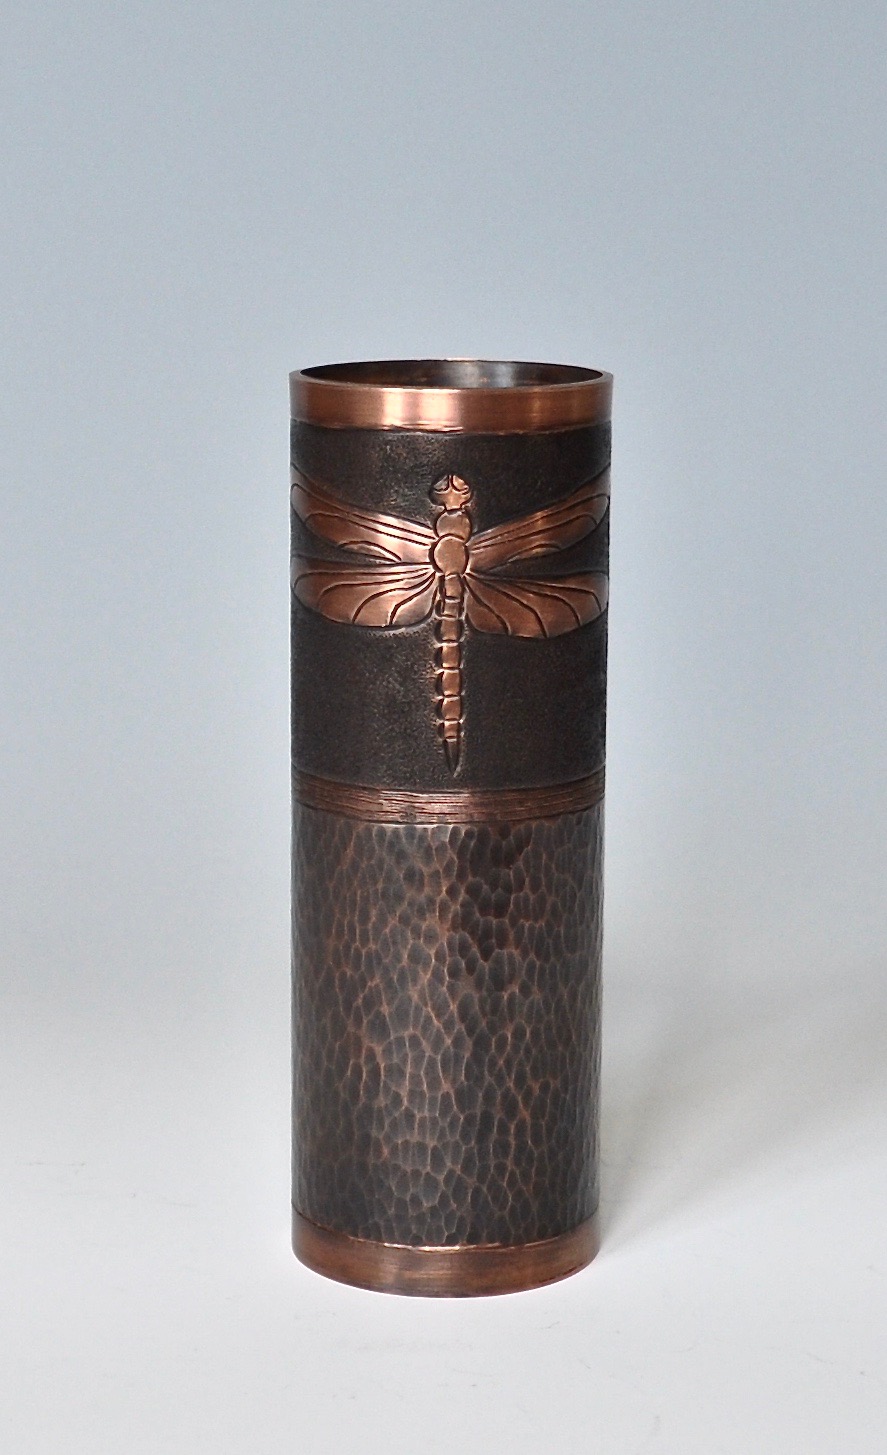 Dragonfly Vase - 2"x6"